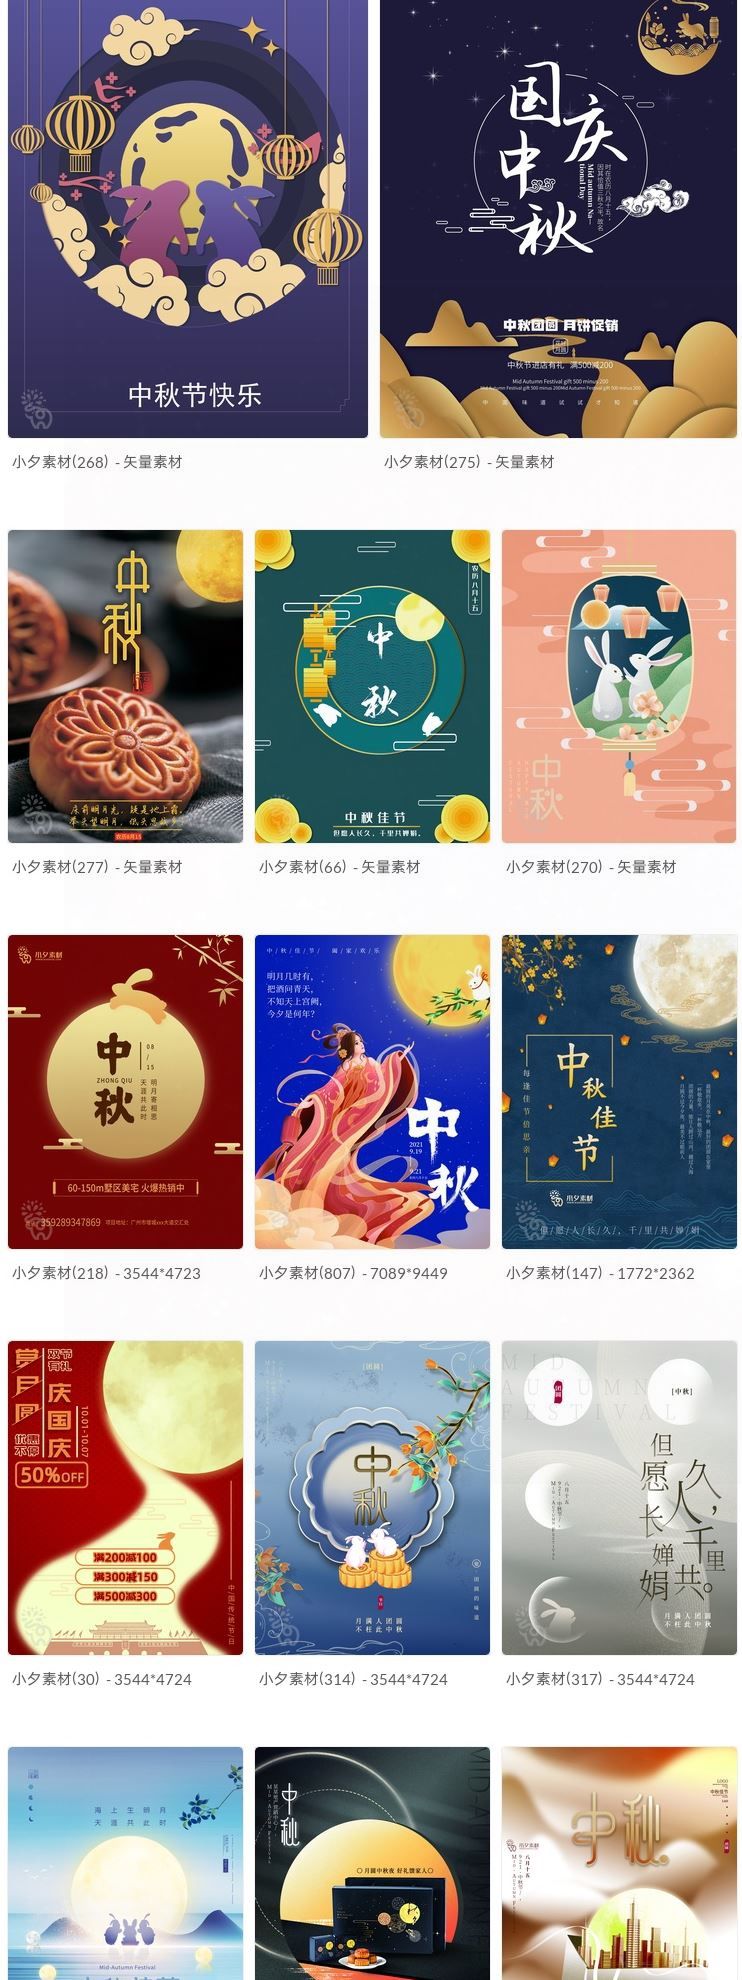 中秋节月饼嫦娥玉兔宣传促销海报展板模板PSD插图4小新卖蜡笔